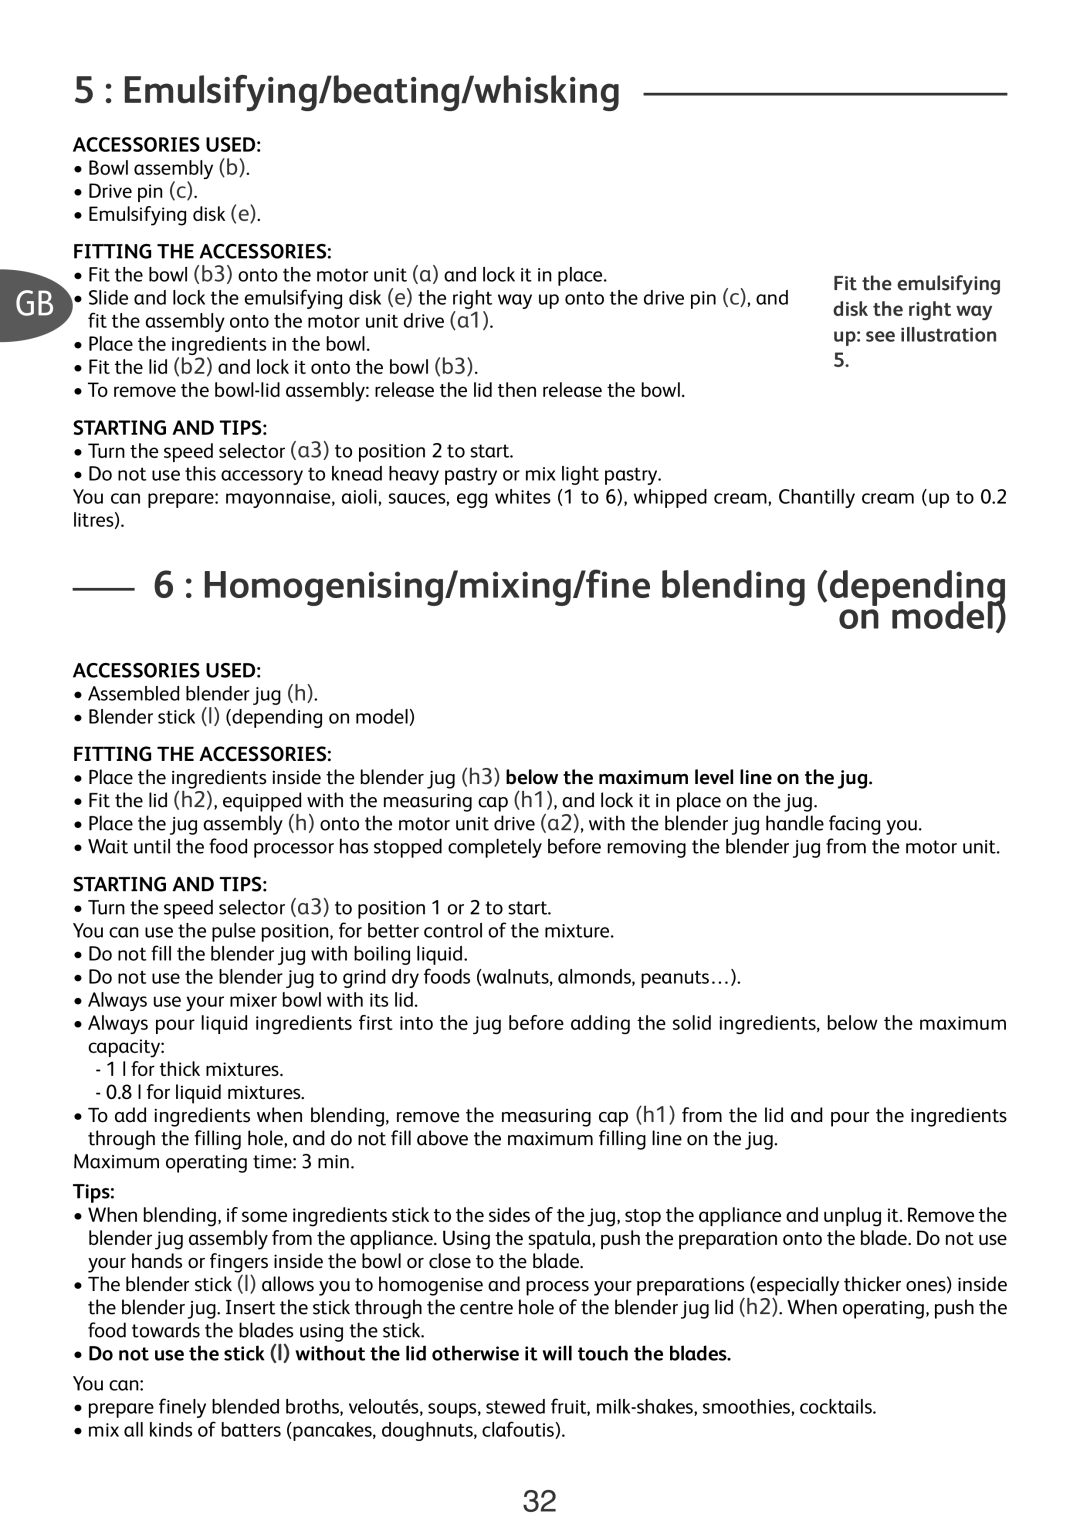 Tefal DO301EA2 Emulsifying/beating/whisking, Homogenising/mixing/fine blending depending on model, Accessories Used, Tips 